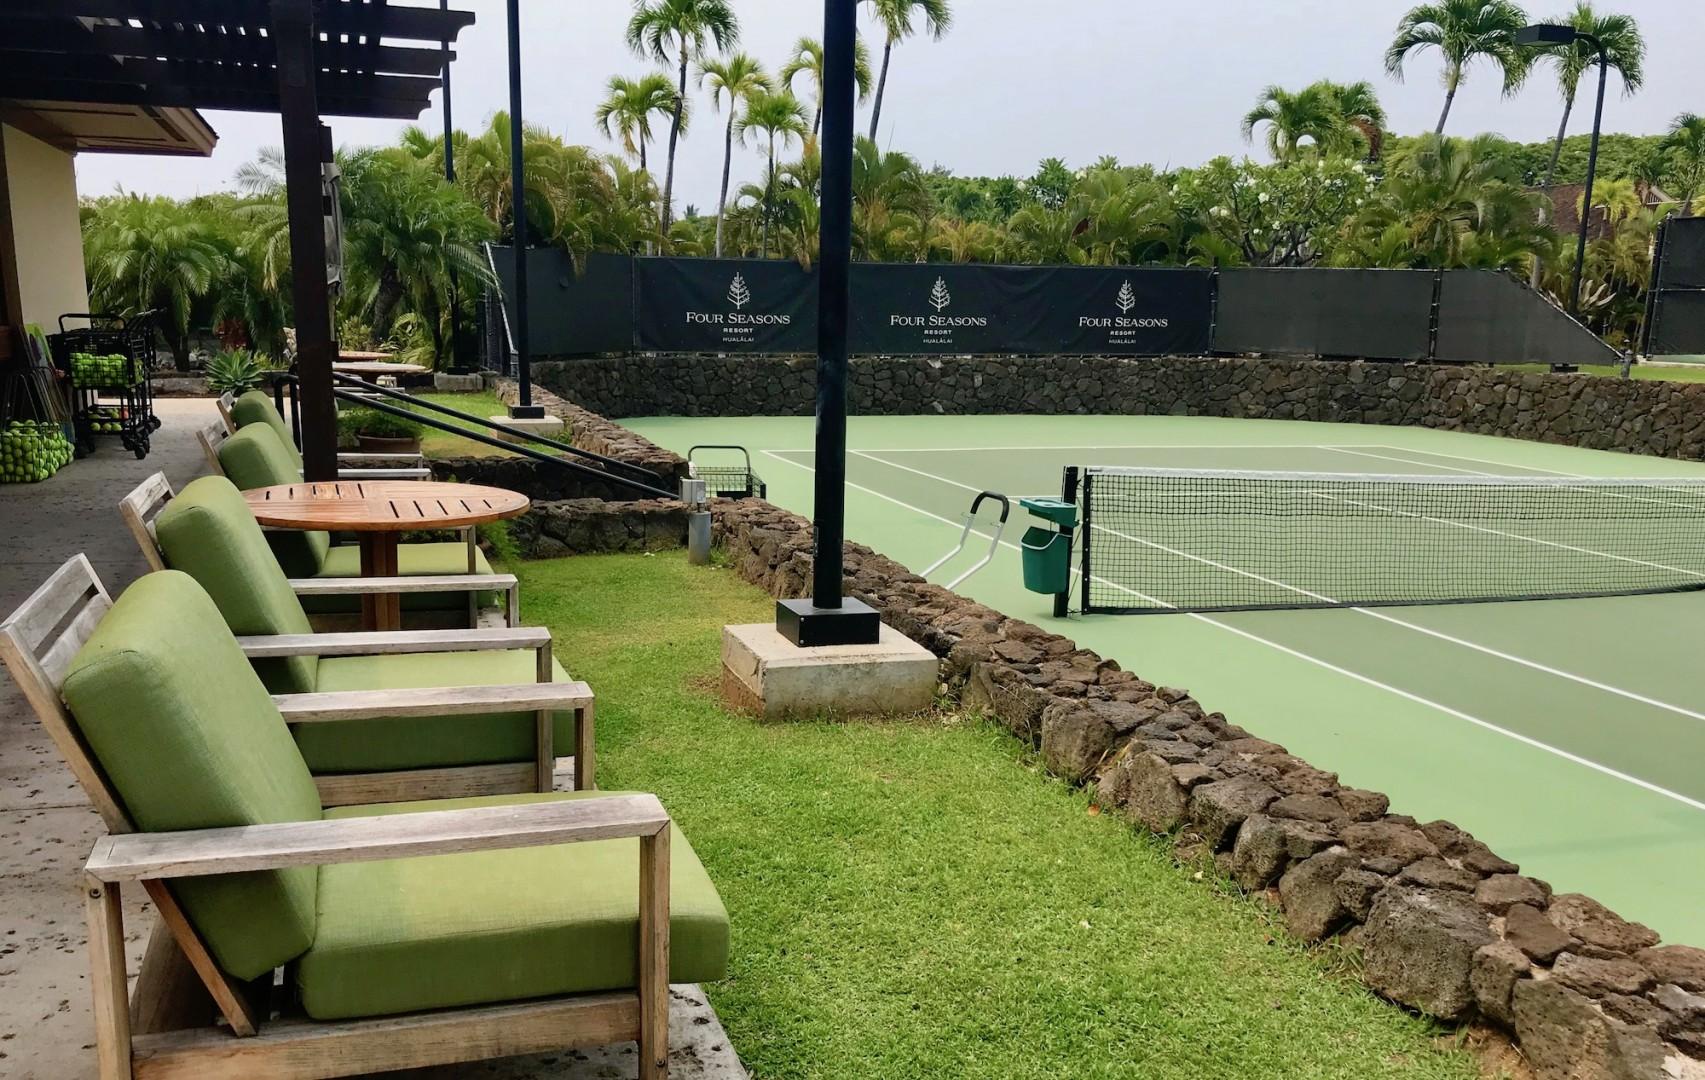 Kailua Kona Vacation Rentals, 3BD Ke Alaula Villa (210B) at Four Seasons Resort at Hualalai - Four Seasons Resort at Hualalai tennis courts.